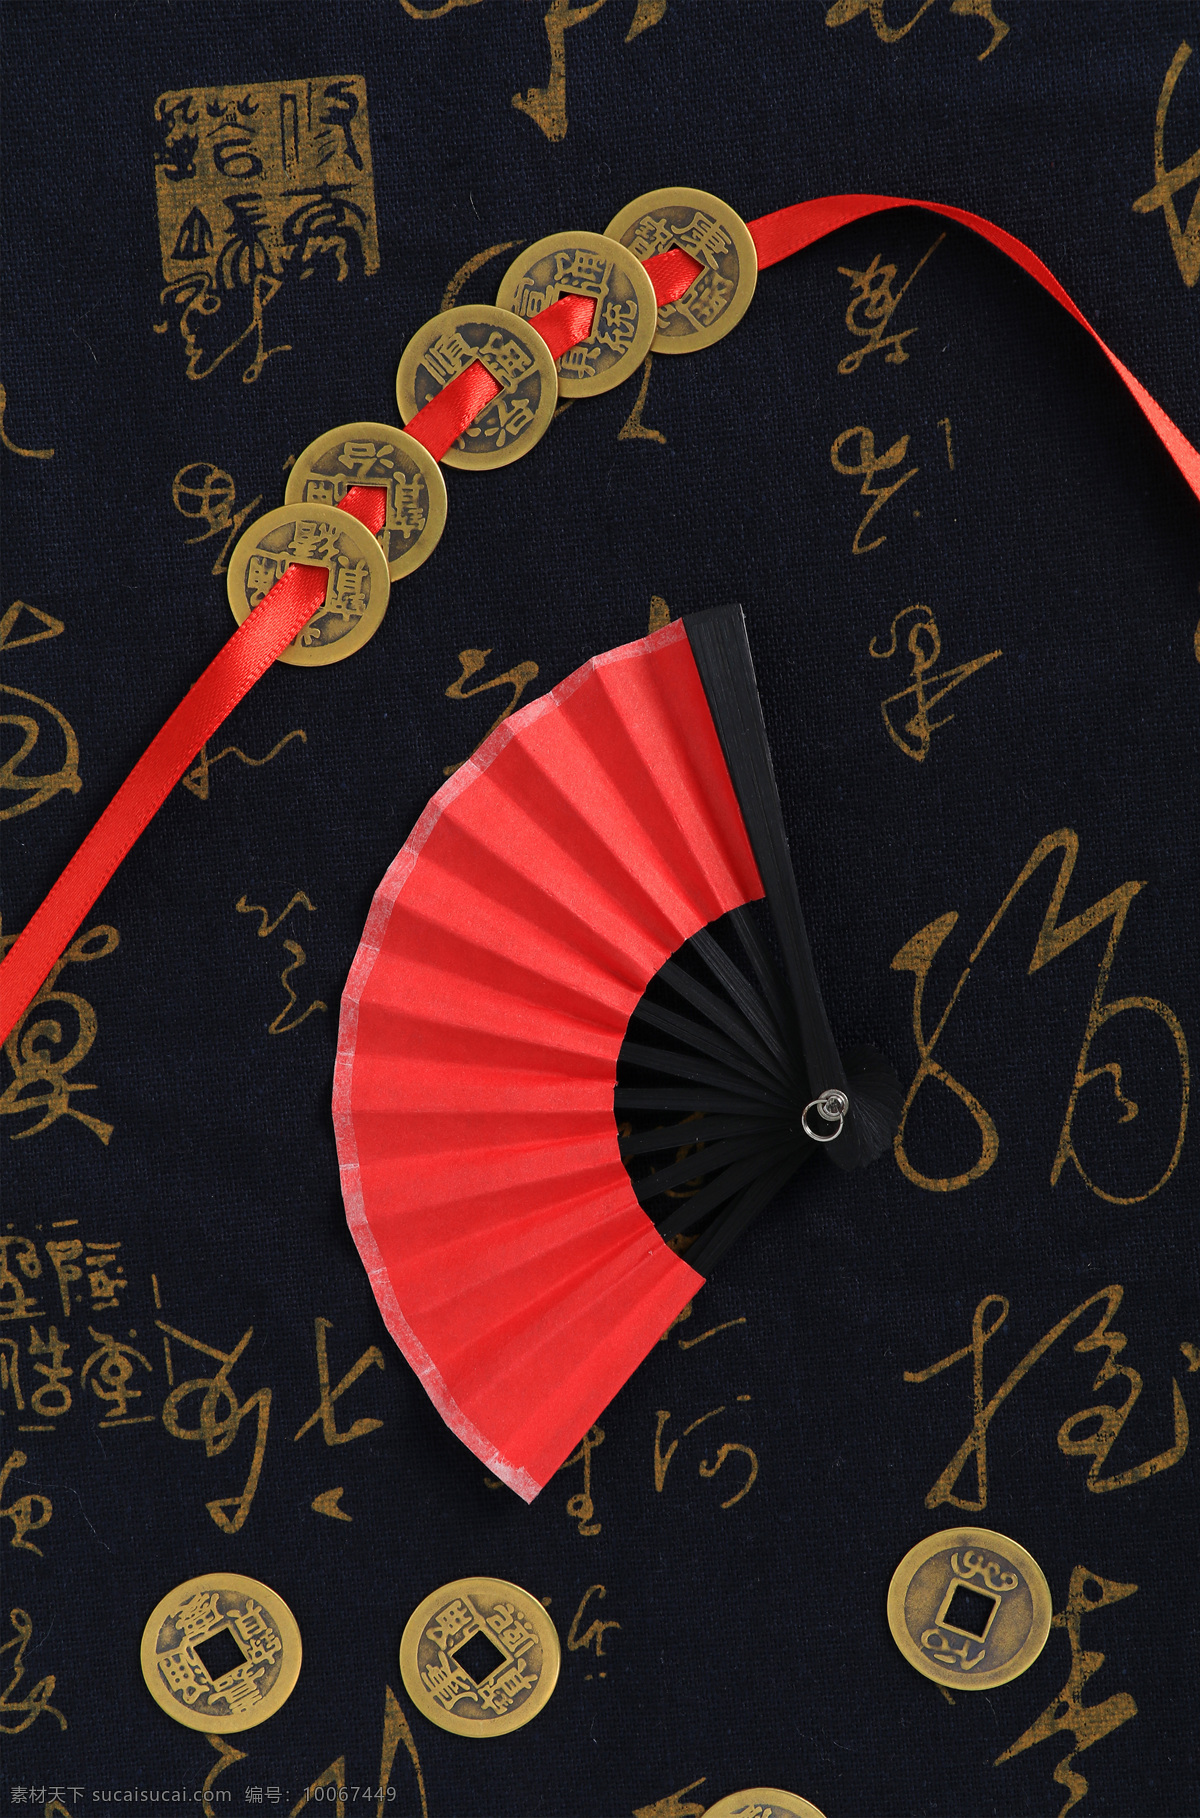 铜钱 纸扇 中国 风 元素 组合 红色 喜庆 国庆 中国风 扇子 装饰品 工艺品 背景图 抠图 特写 文化艺术 传统文化